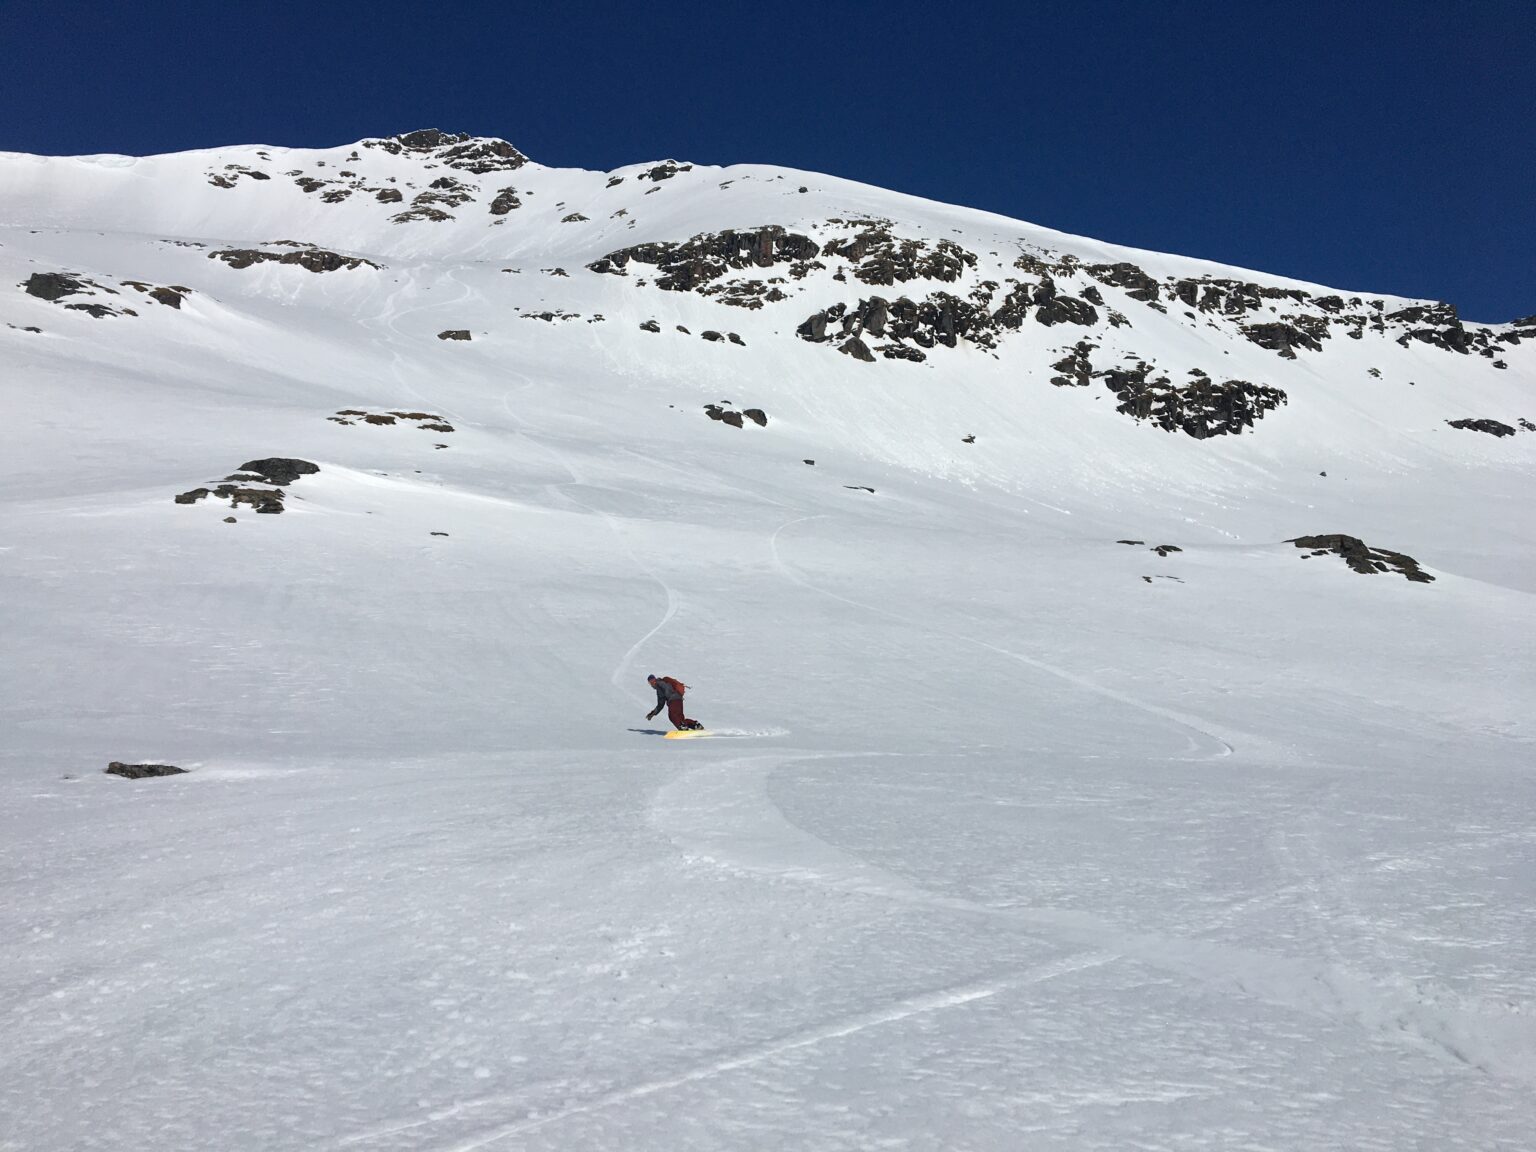 Snowboarding the upper bowl of Blåbærfjellet